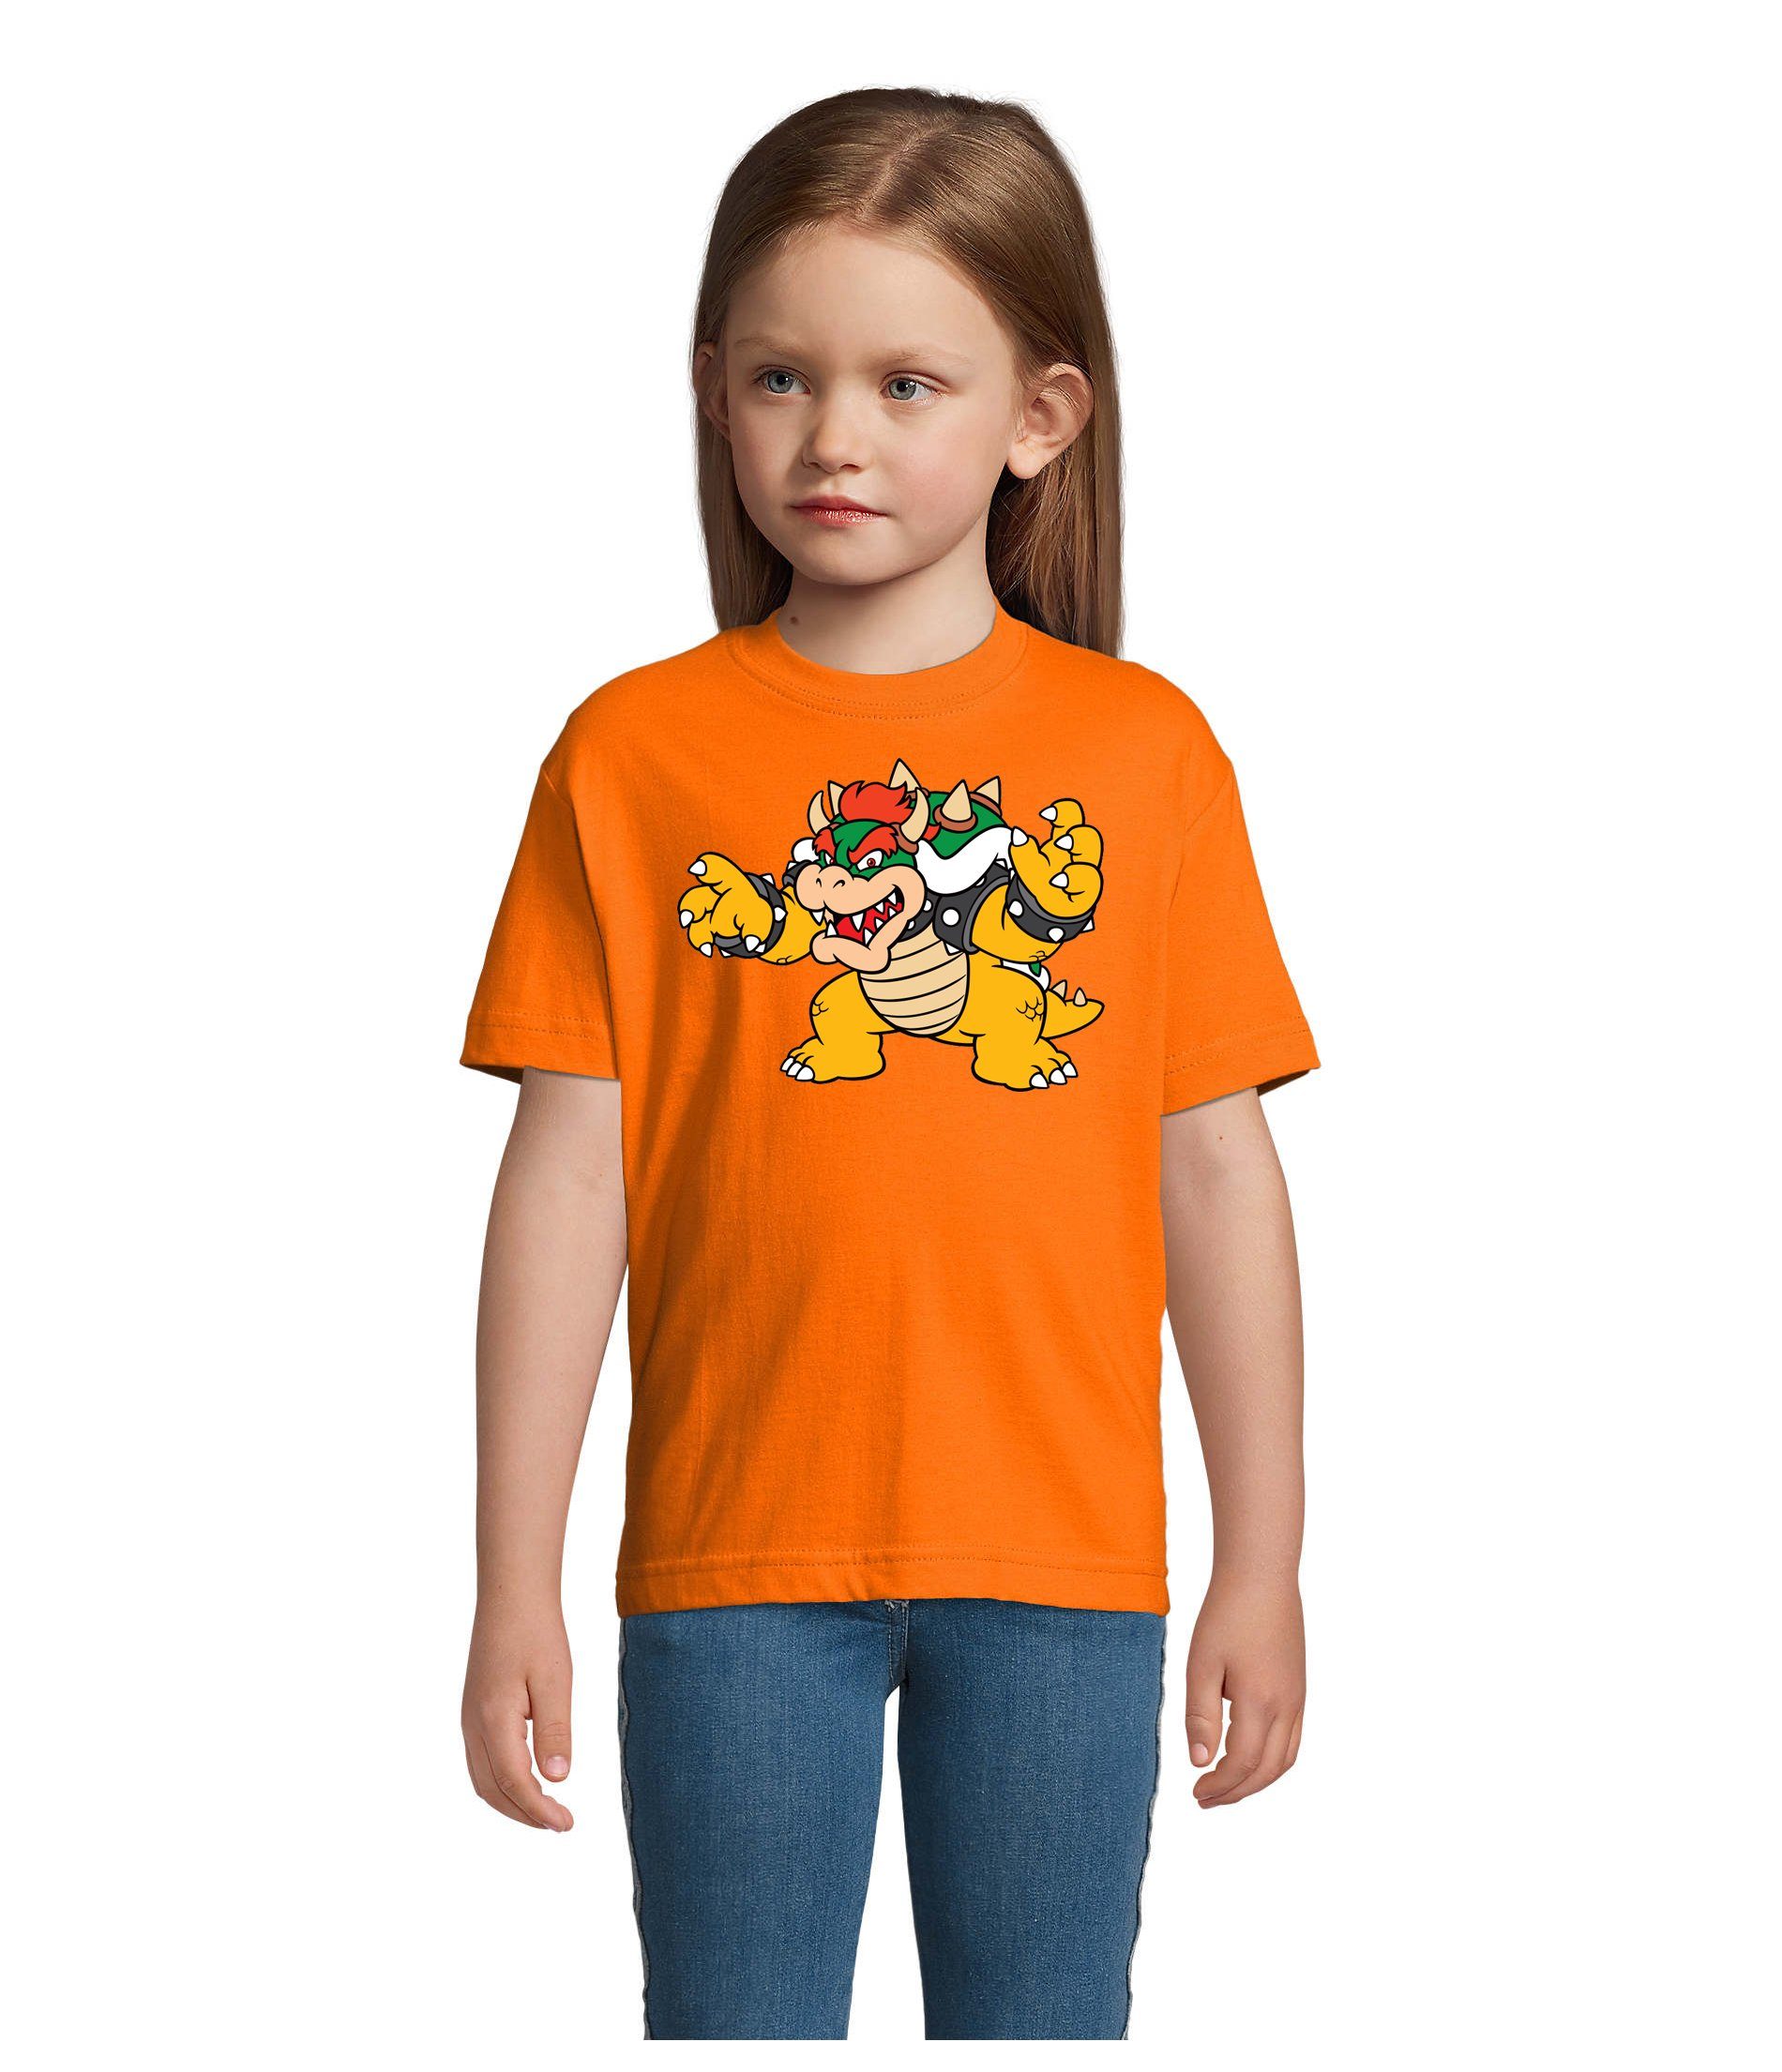 Gamer Nintendo Brownie Orange Game & Kinder Blondie Luigi Bowser Yoshi Konsole T-Shirt Mario